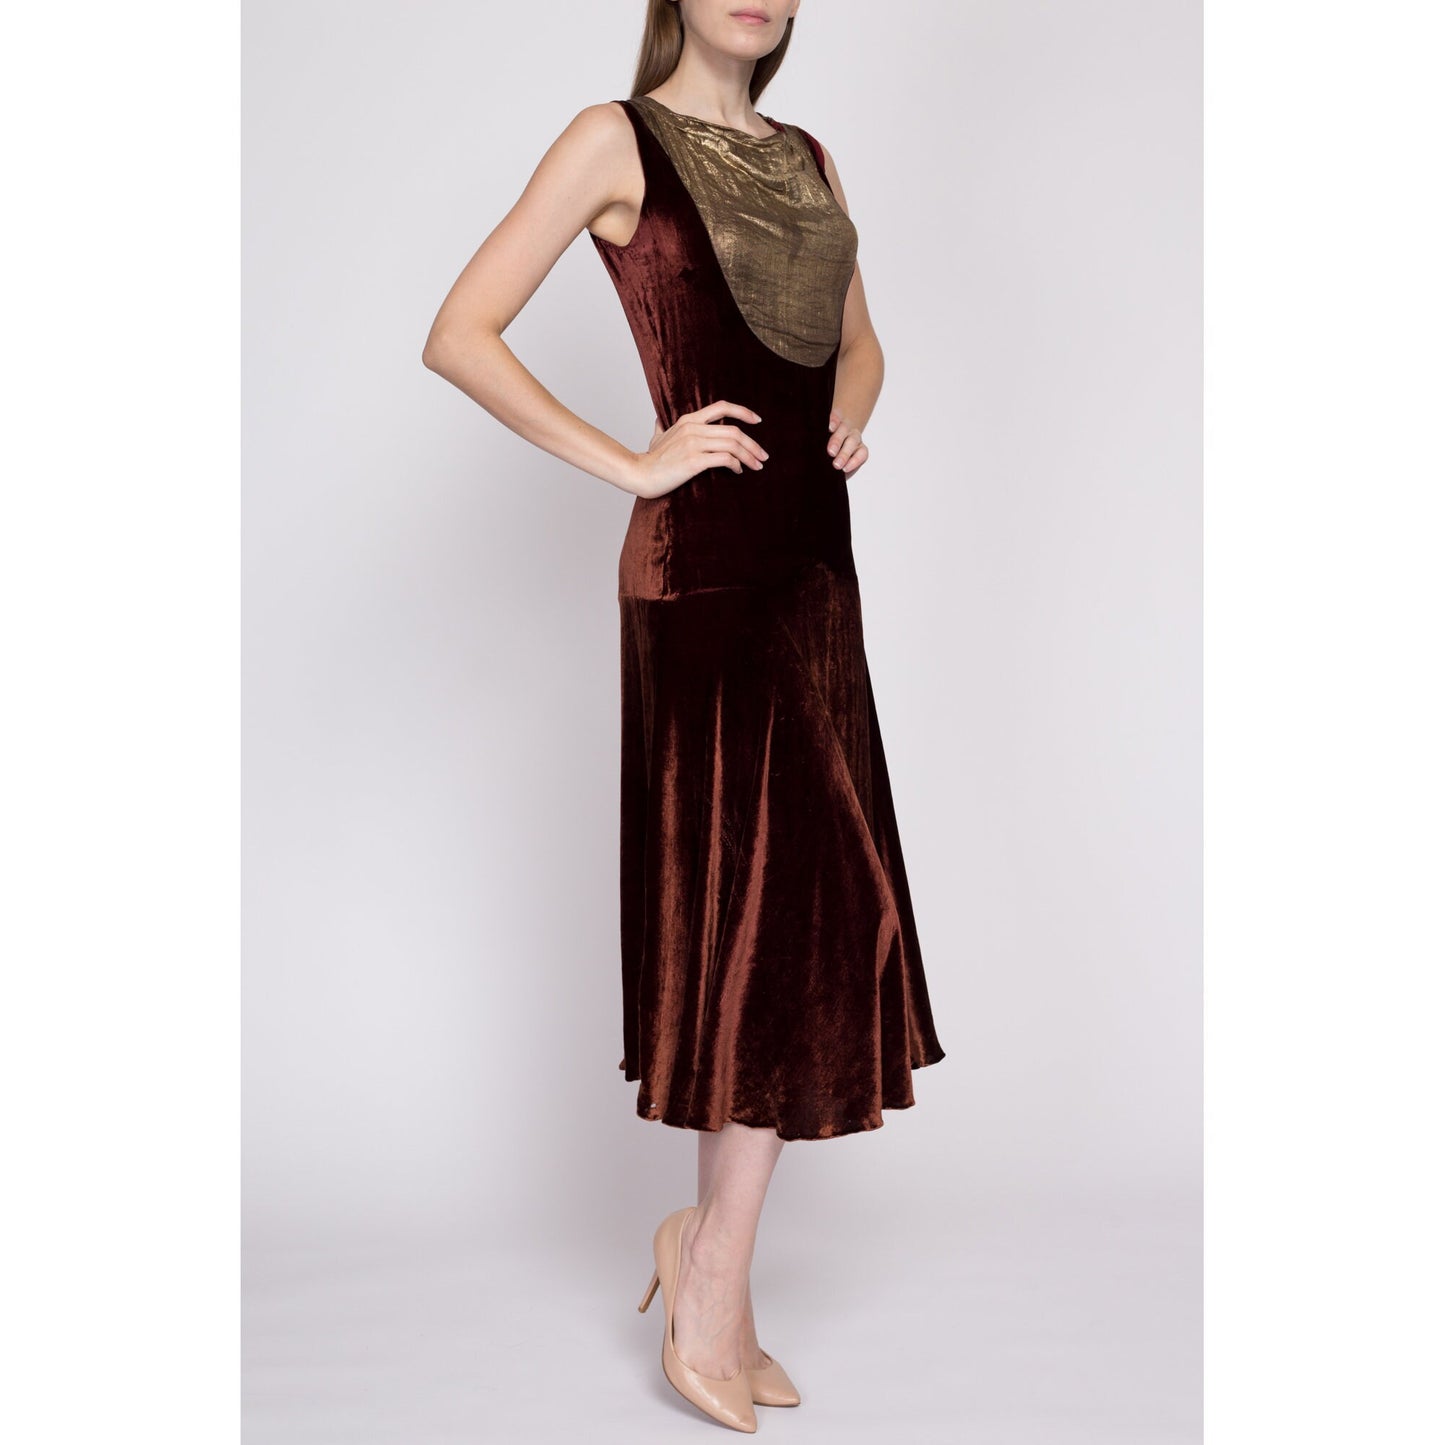 S| 1920s Silk Velvet Lamé Dress & Jacket Set - Small | Antique 20s True Vintage Midi Dress Two Piece Matching Outfit